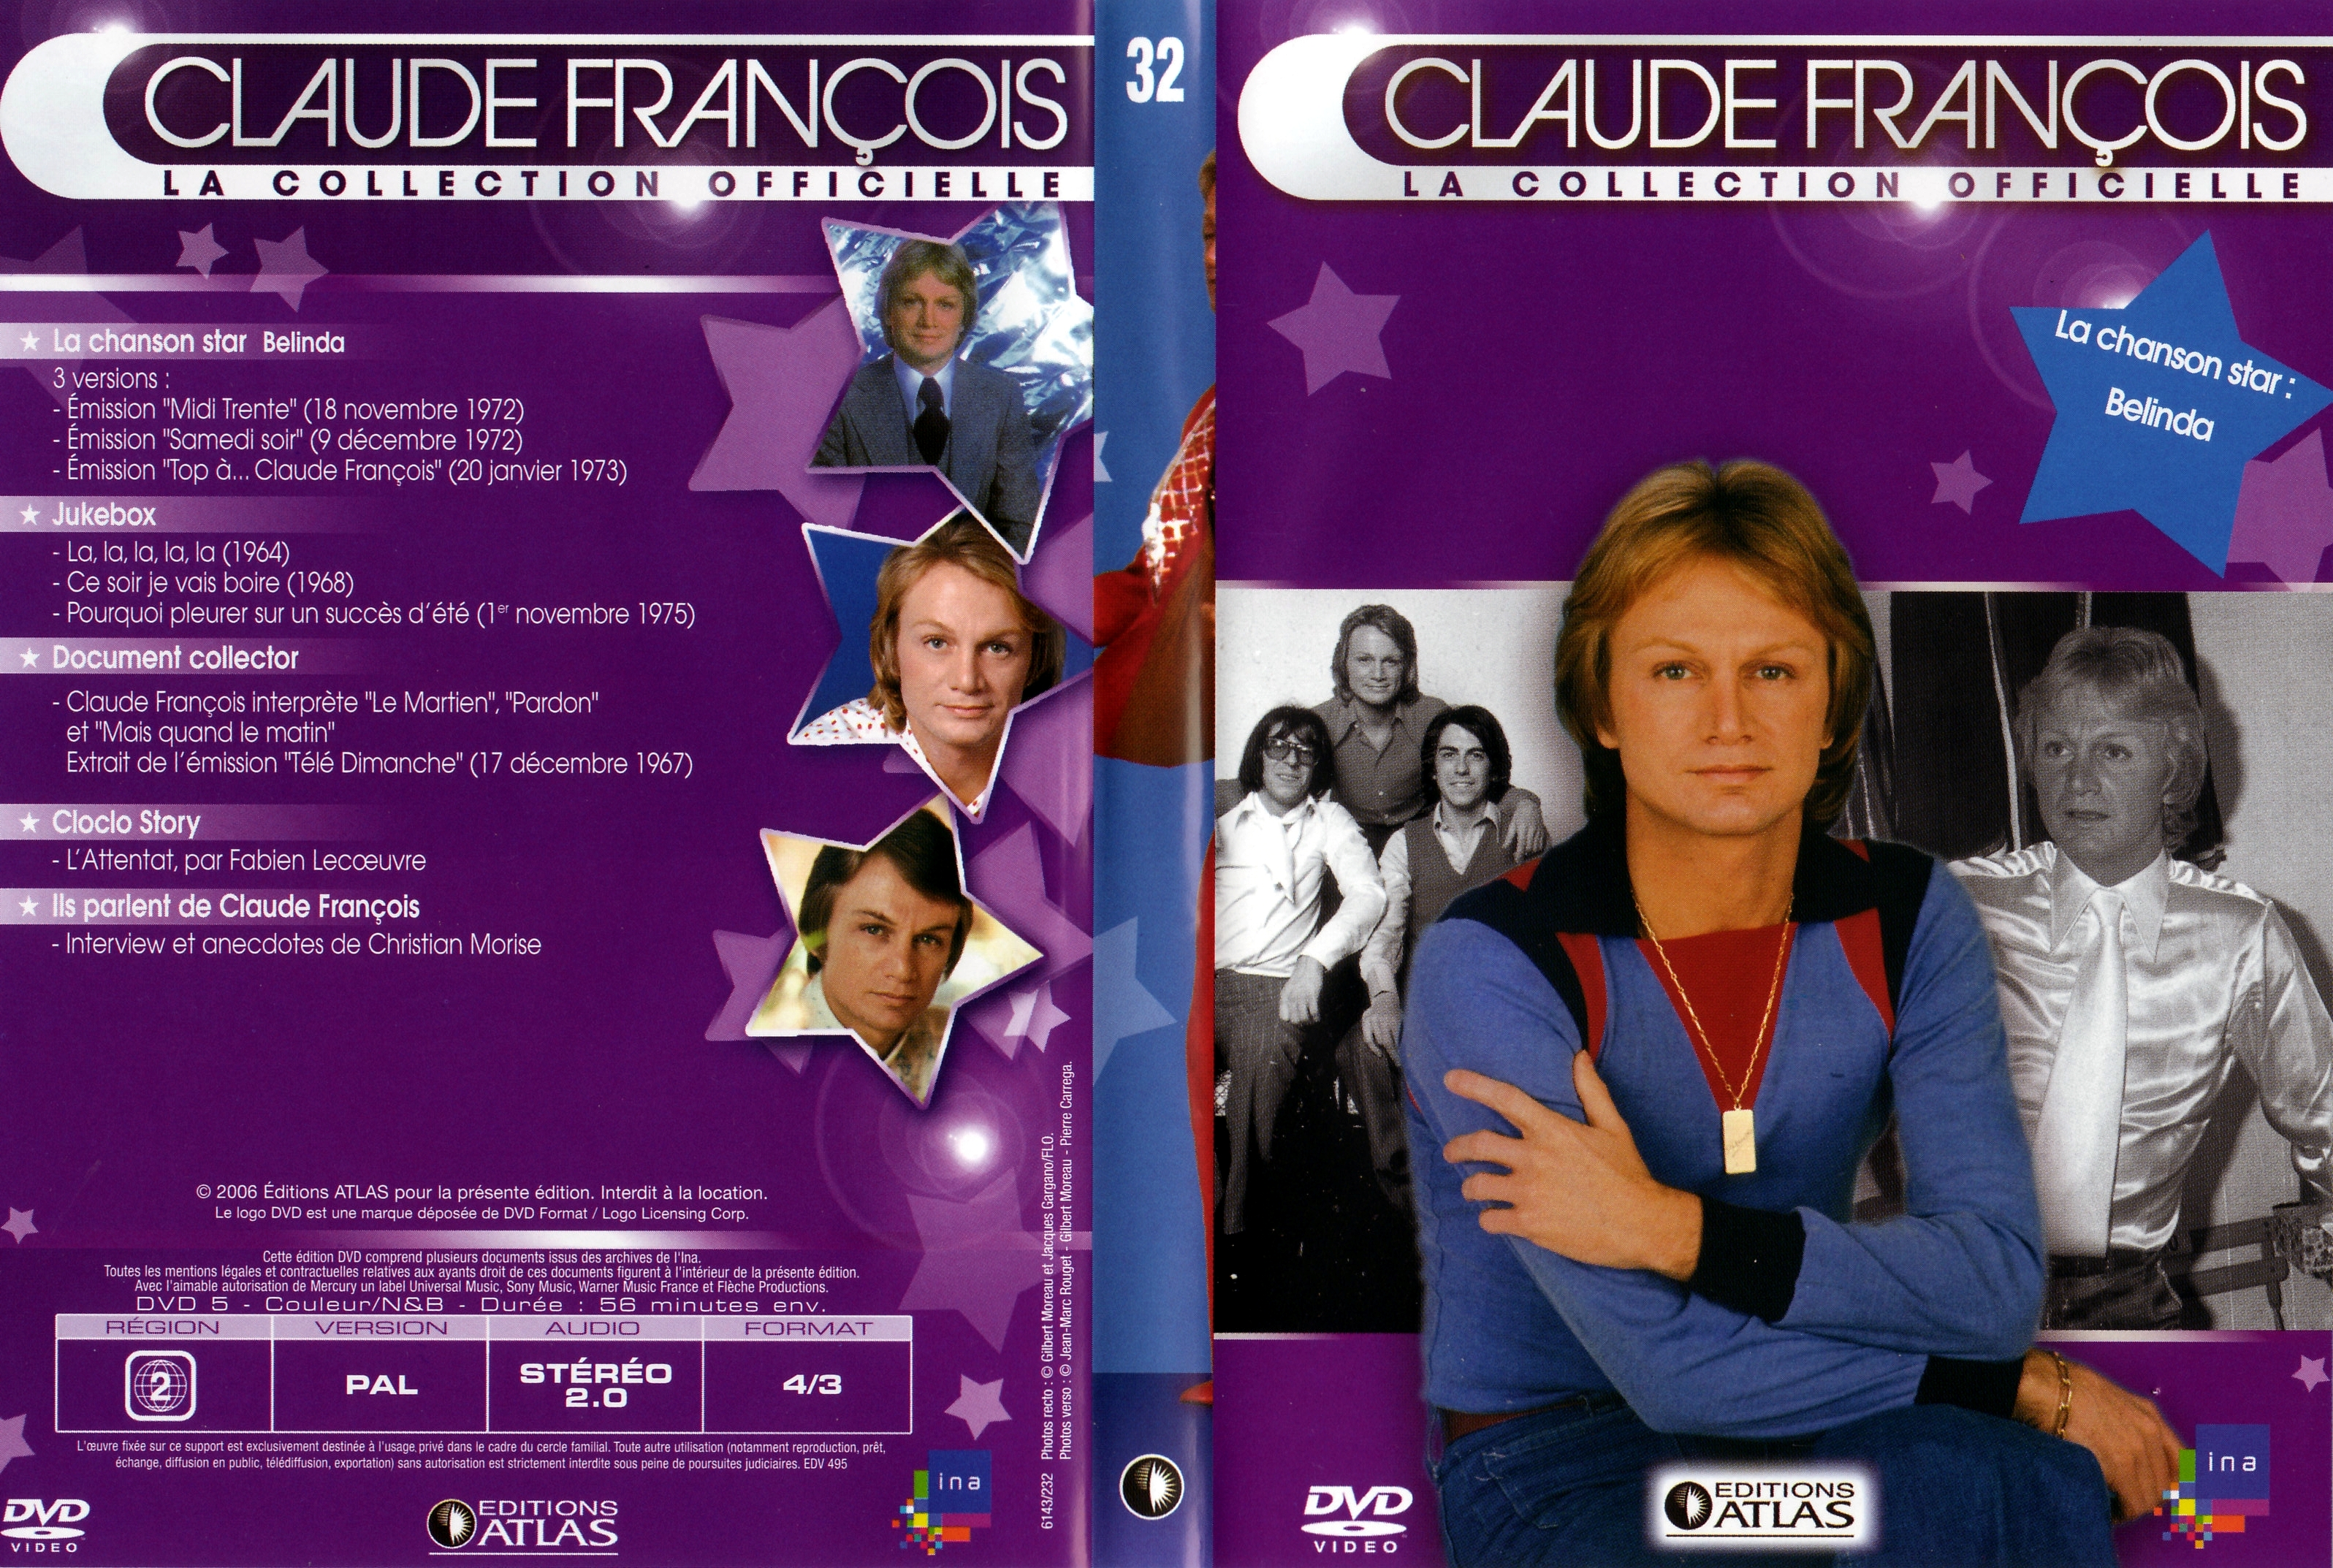 Jaquette DVD Claude Francois la collection officielle vol 32